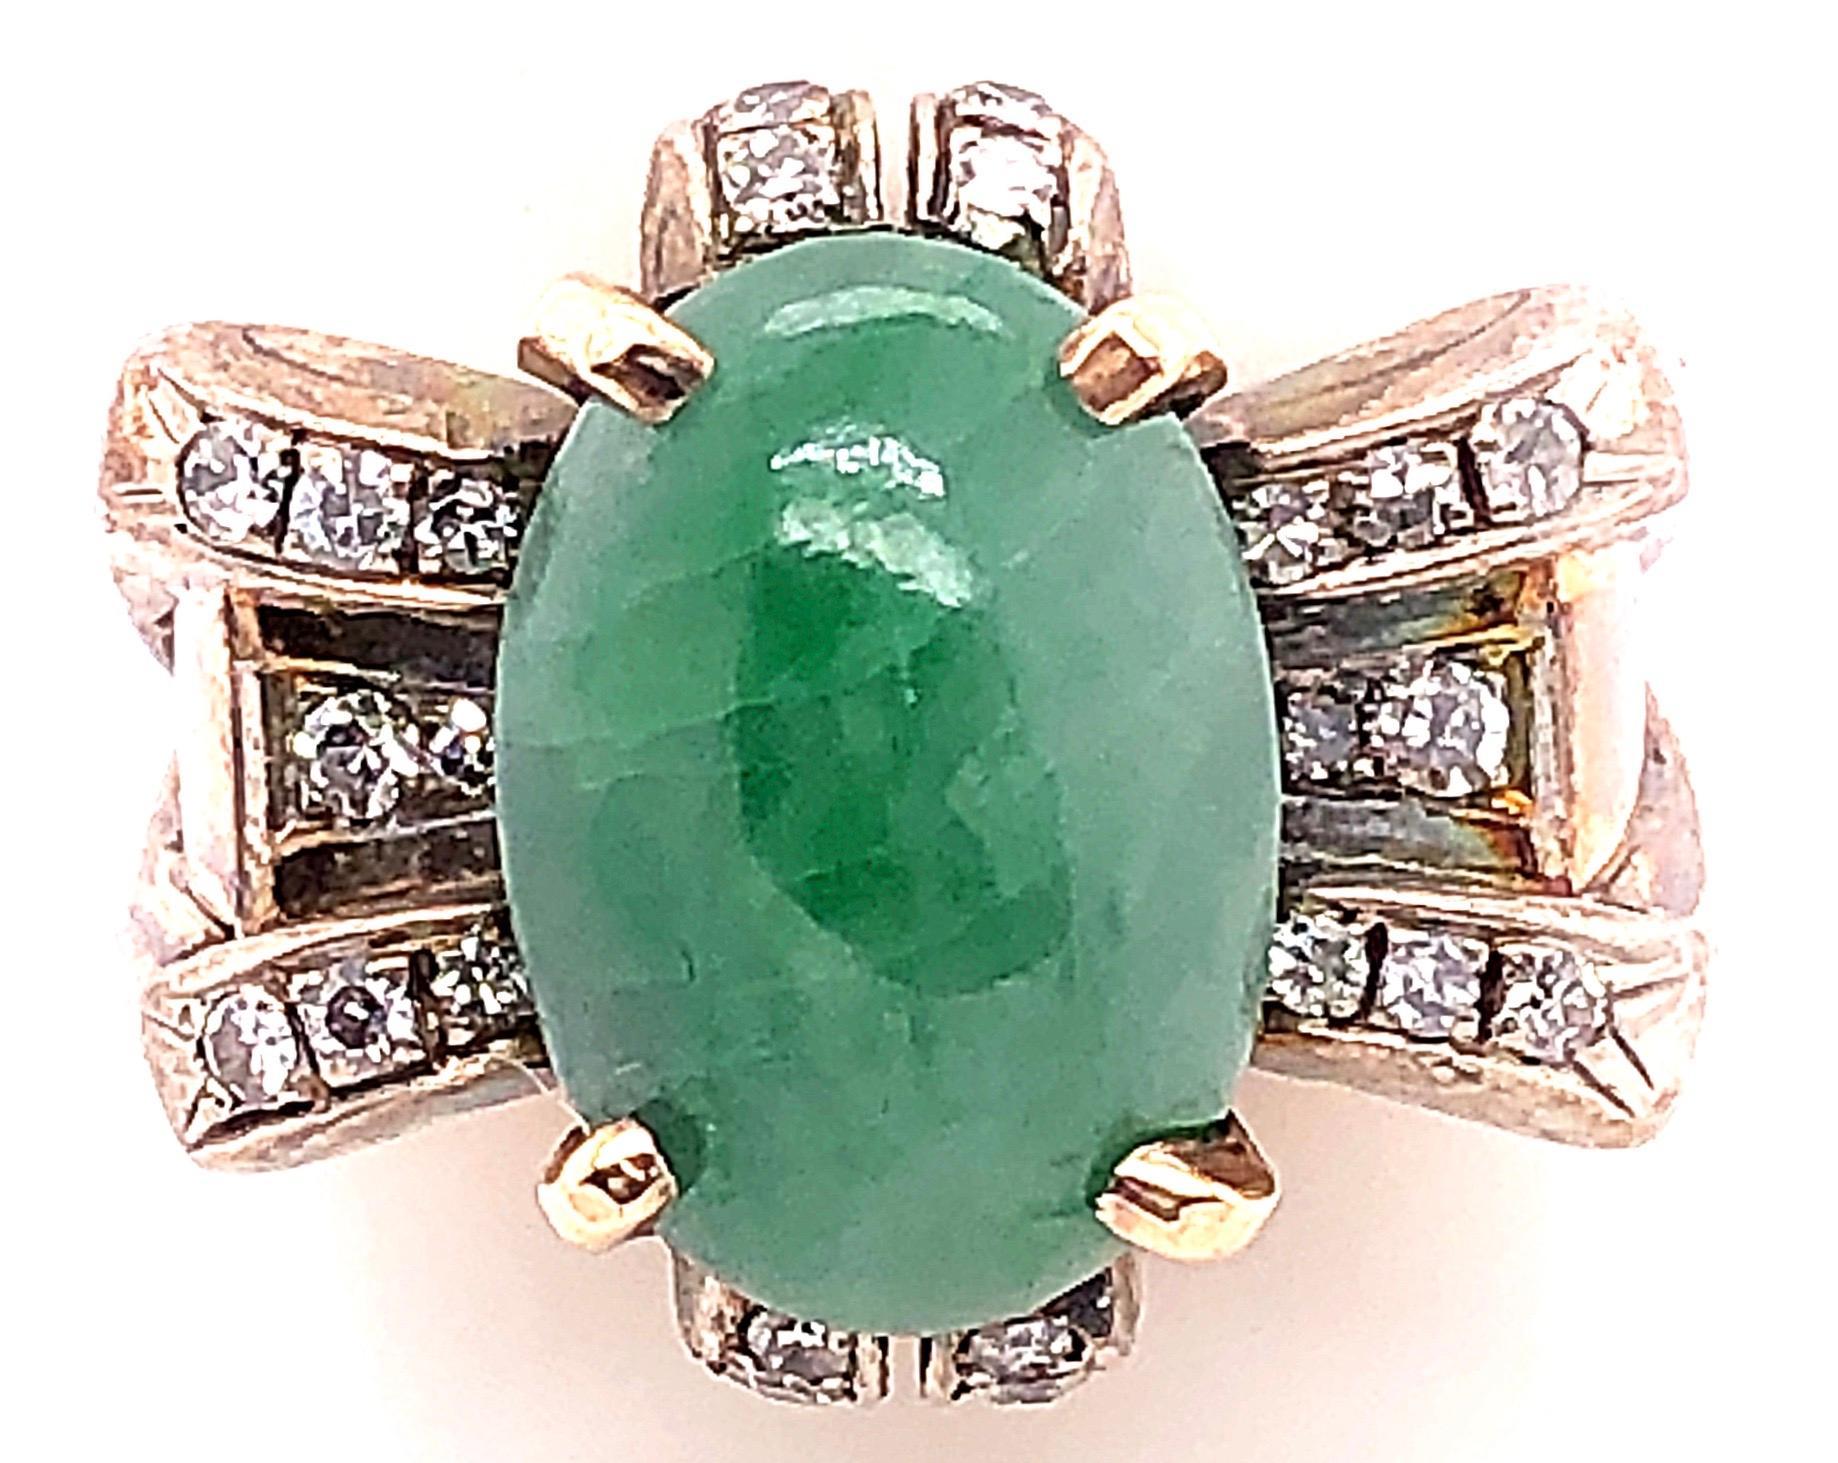 18 Karat Gelbgold Ovaler Jade-Solitär-Ring mit Diamant-Akzenten
24 Stück Diamanten mit einem Gesamtgewicht von 0,25 Diamanten.
Größe 9
9.50 Gramm Gesamtgewicht.
Höhe: 20 mm
Breite: 20 mm
Tiefe: 5 mm